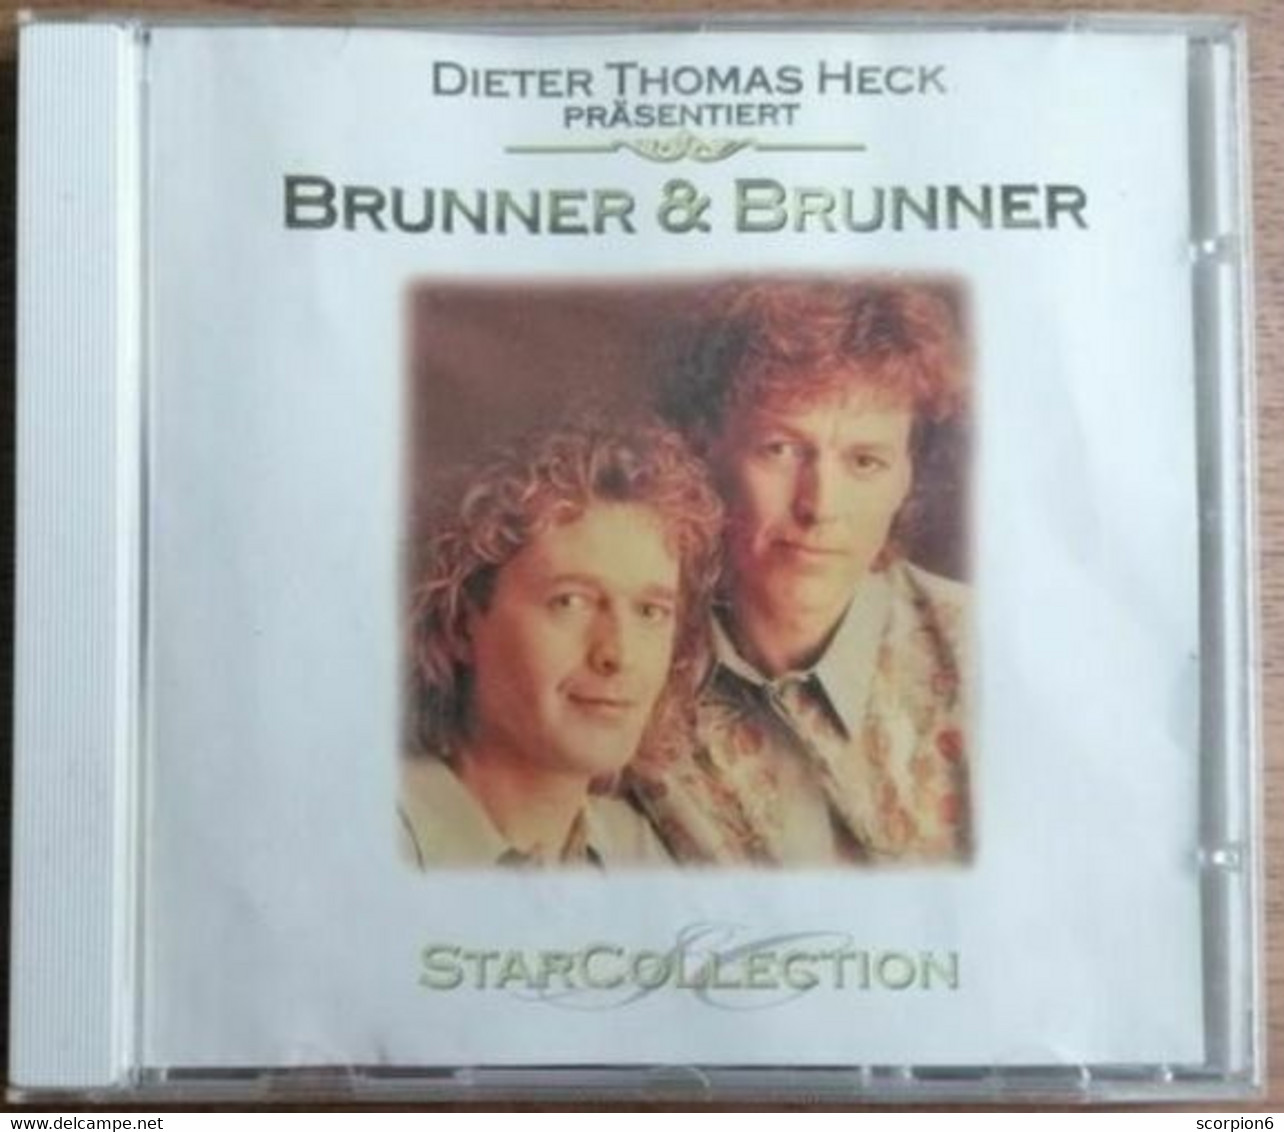 CD - Brunner & Brunner - Star Collection - Other - German Music